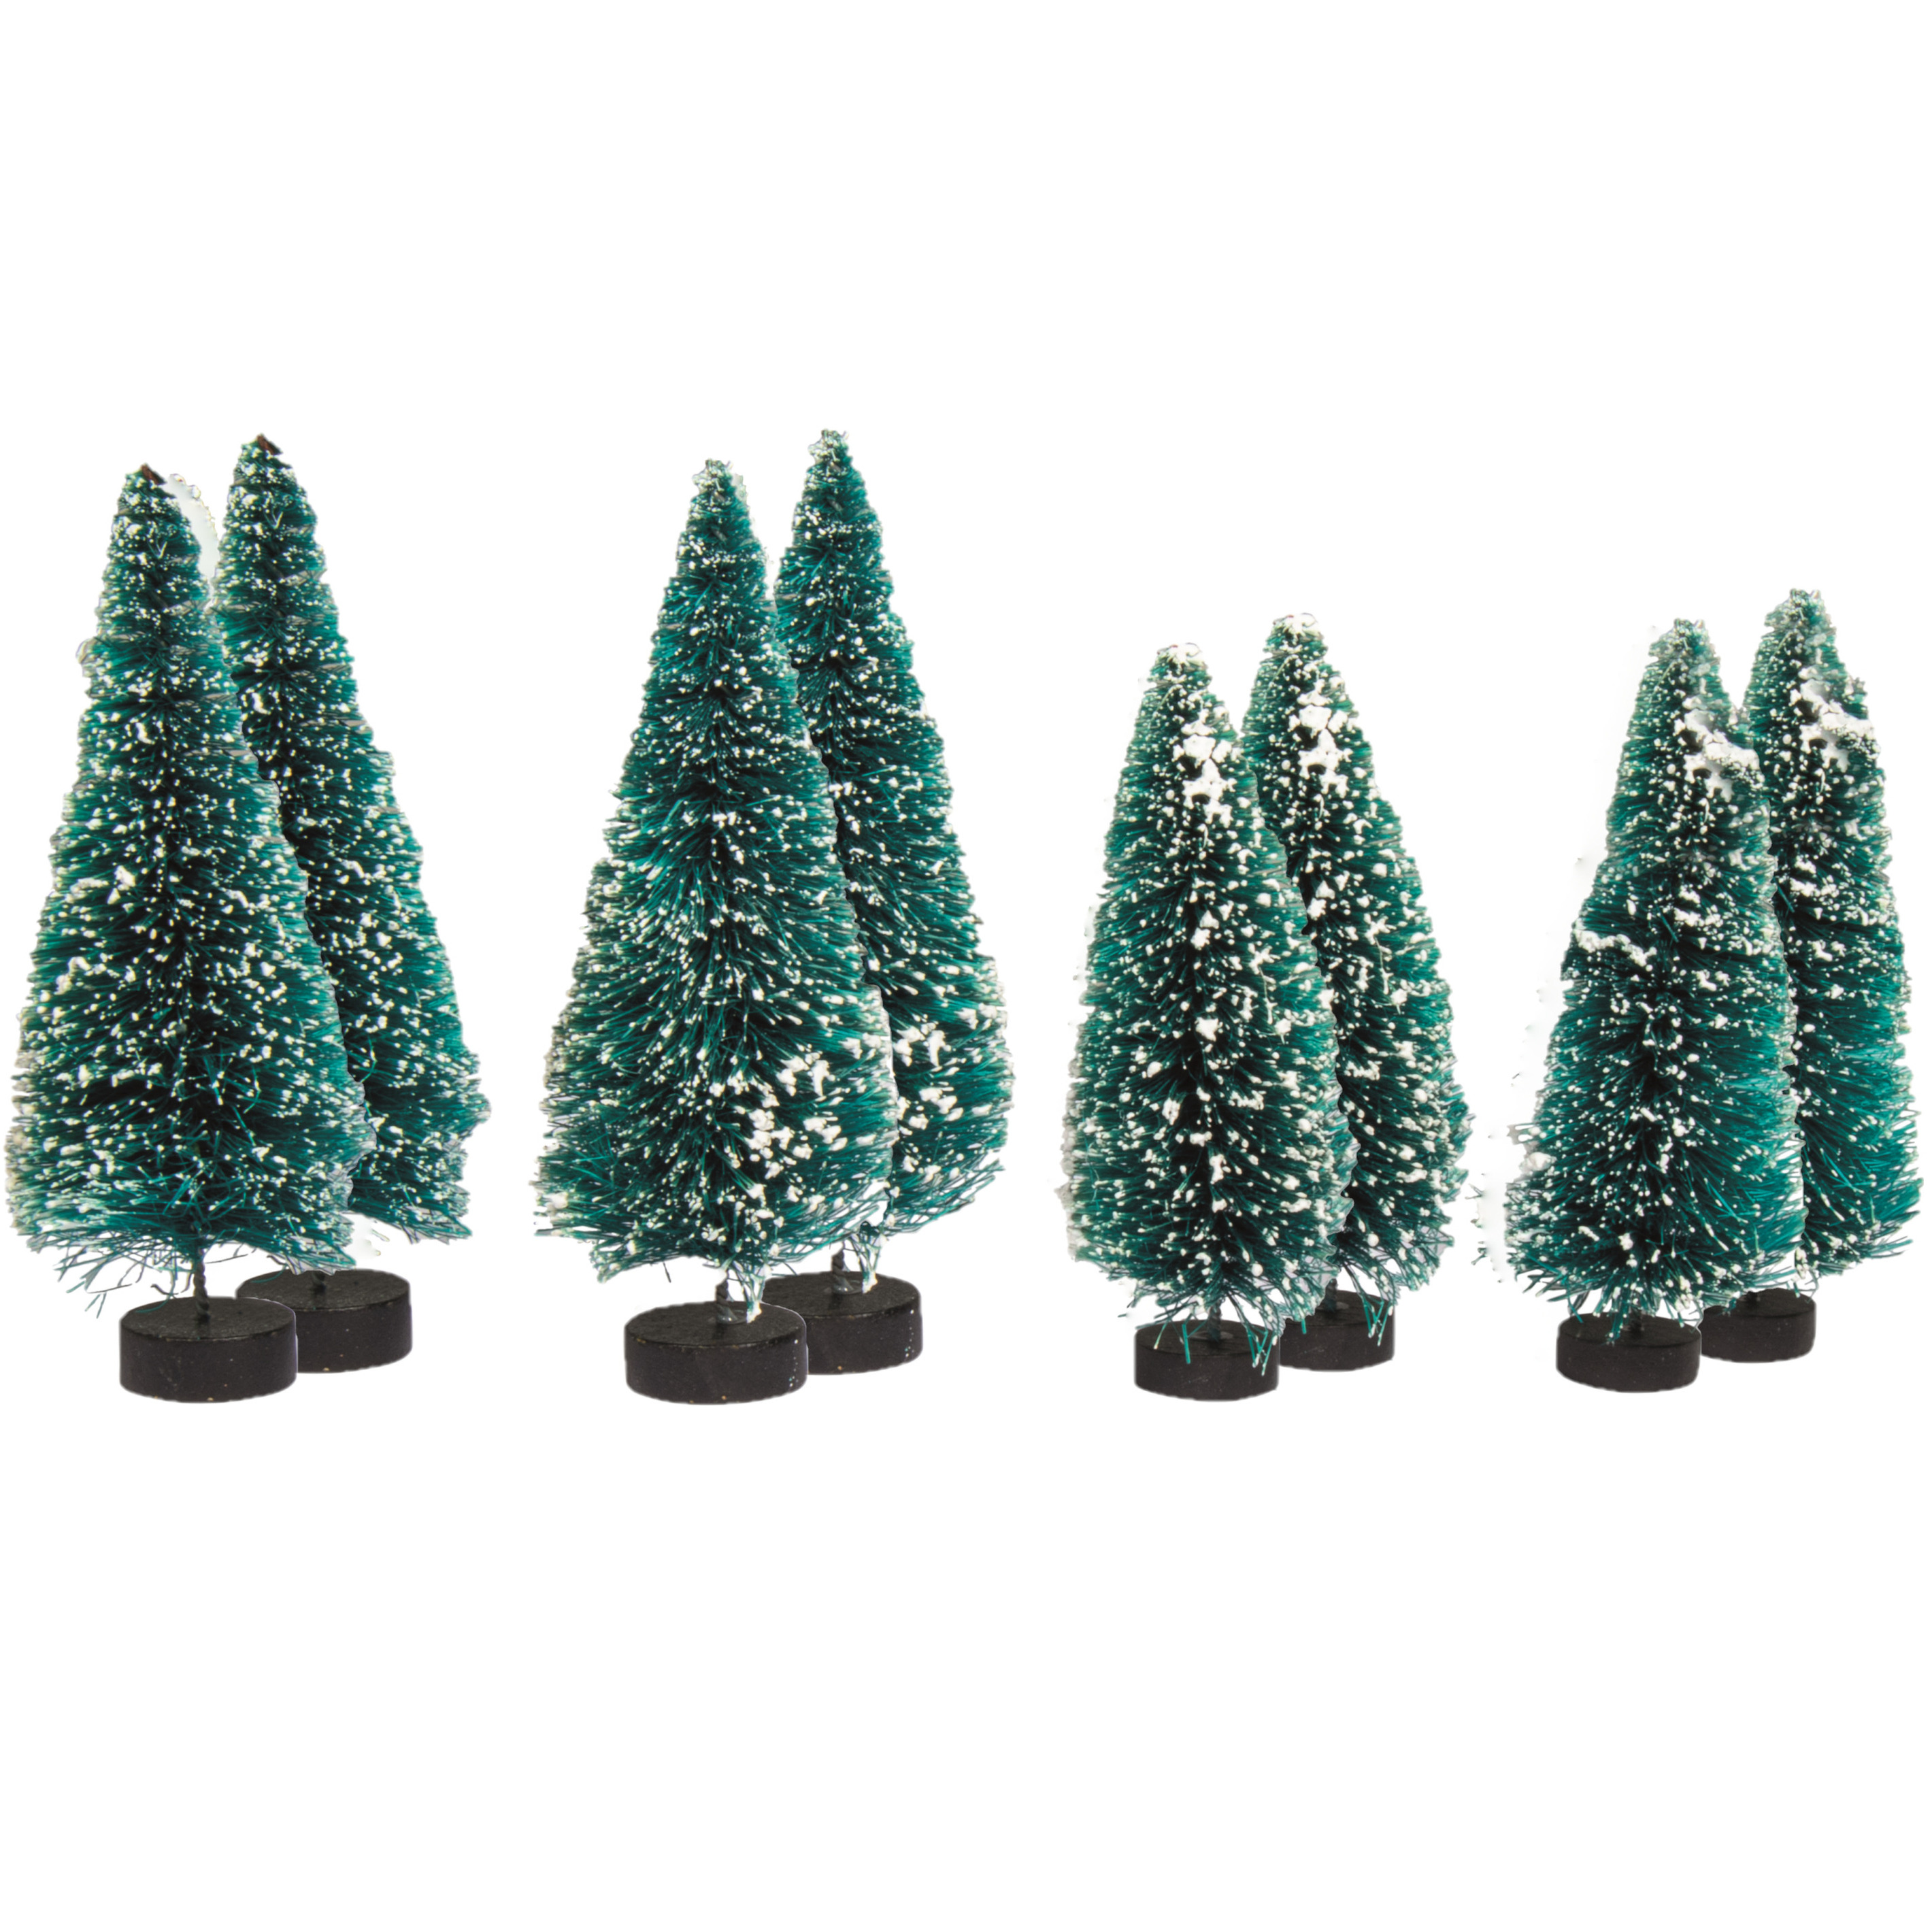 Kerstdorp boompjes-kerstboompjes 8x st 9 en 12 cm -besneeuwd miniatuur